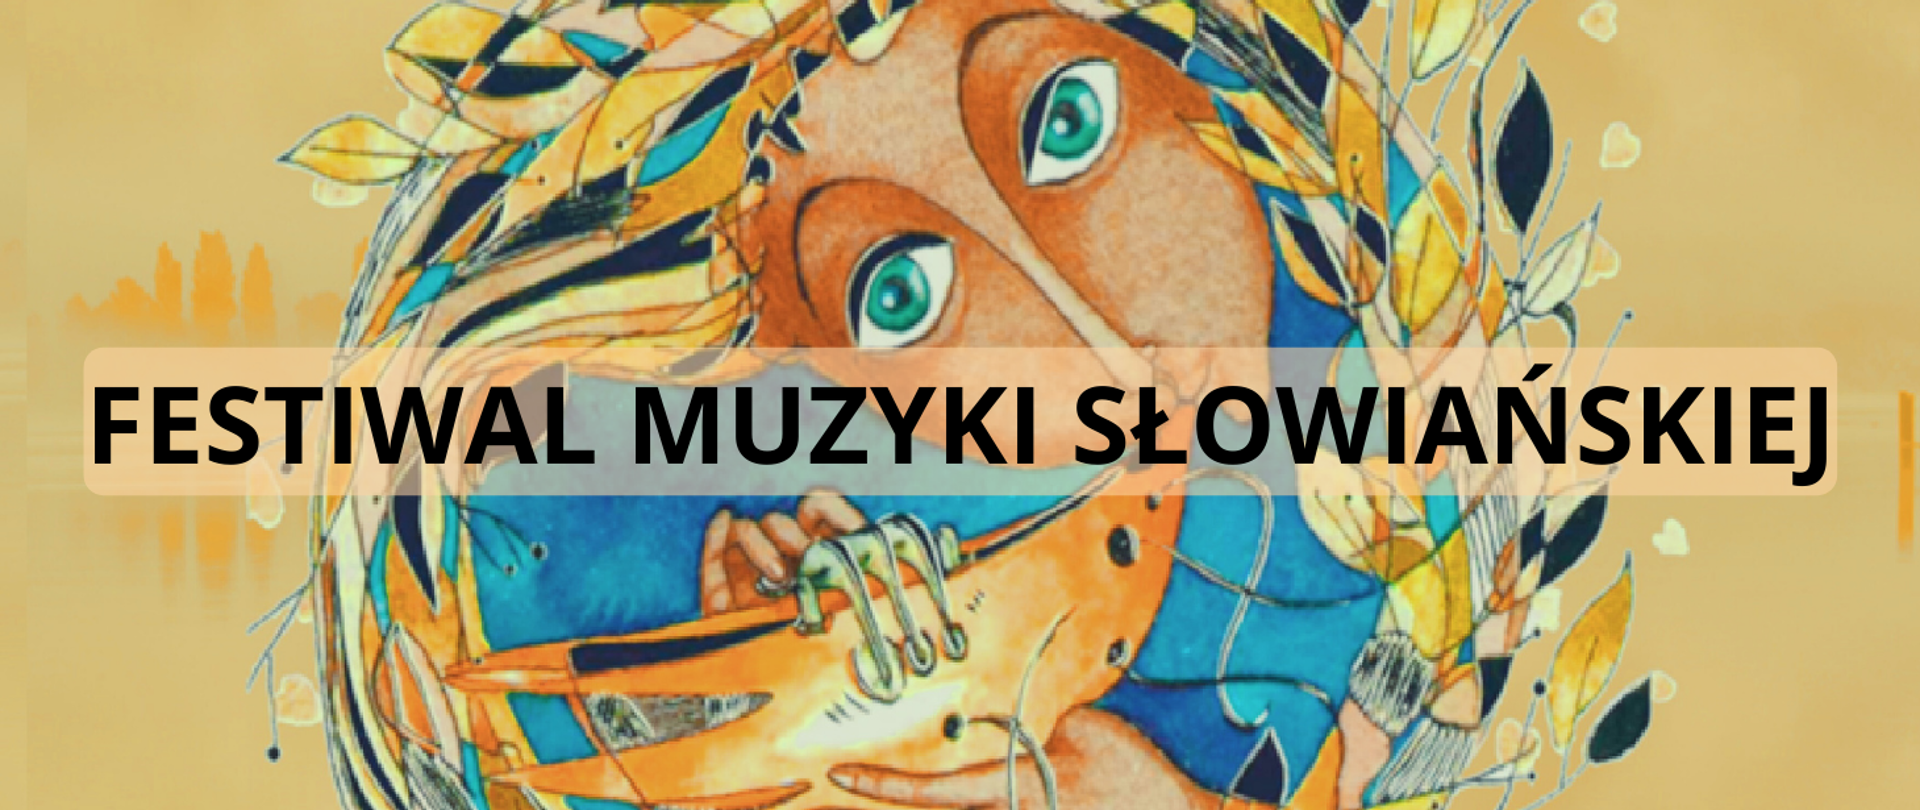 Na żółtym tle postać słowiańskiej kobiety grającej na instrumencie dętym. Zamiast włosów postać ma okrąg z kolorowych liści (żółtych, niebieskich, granatowych. W centralnym miejscu napis: Festiwal muzyki słowiańskiej.